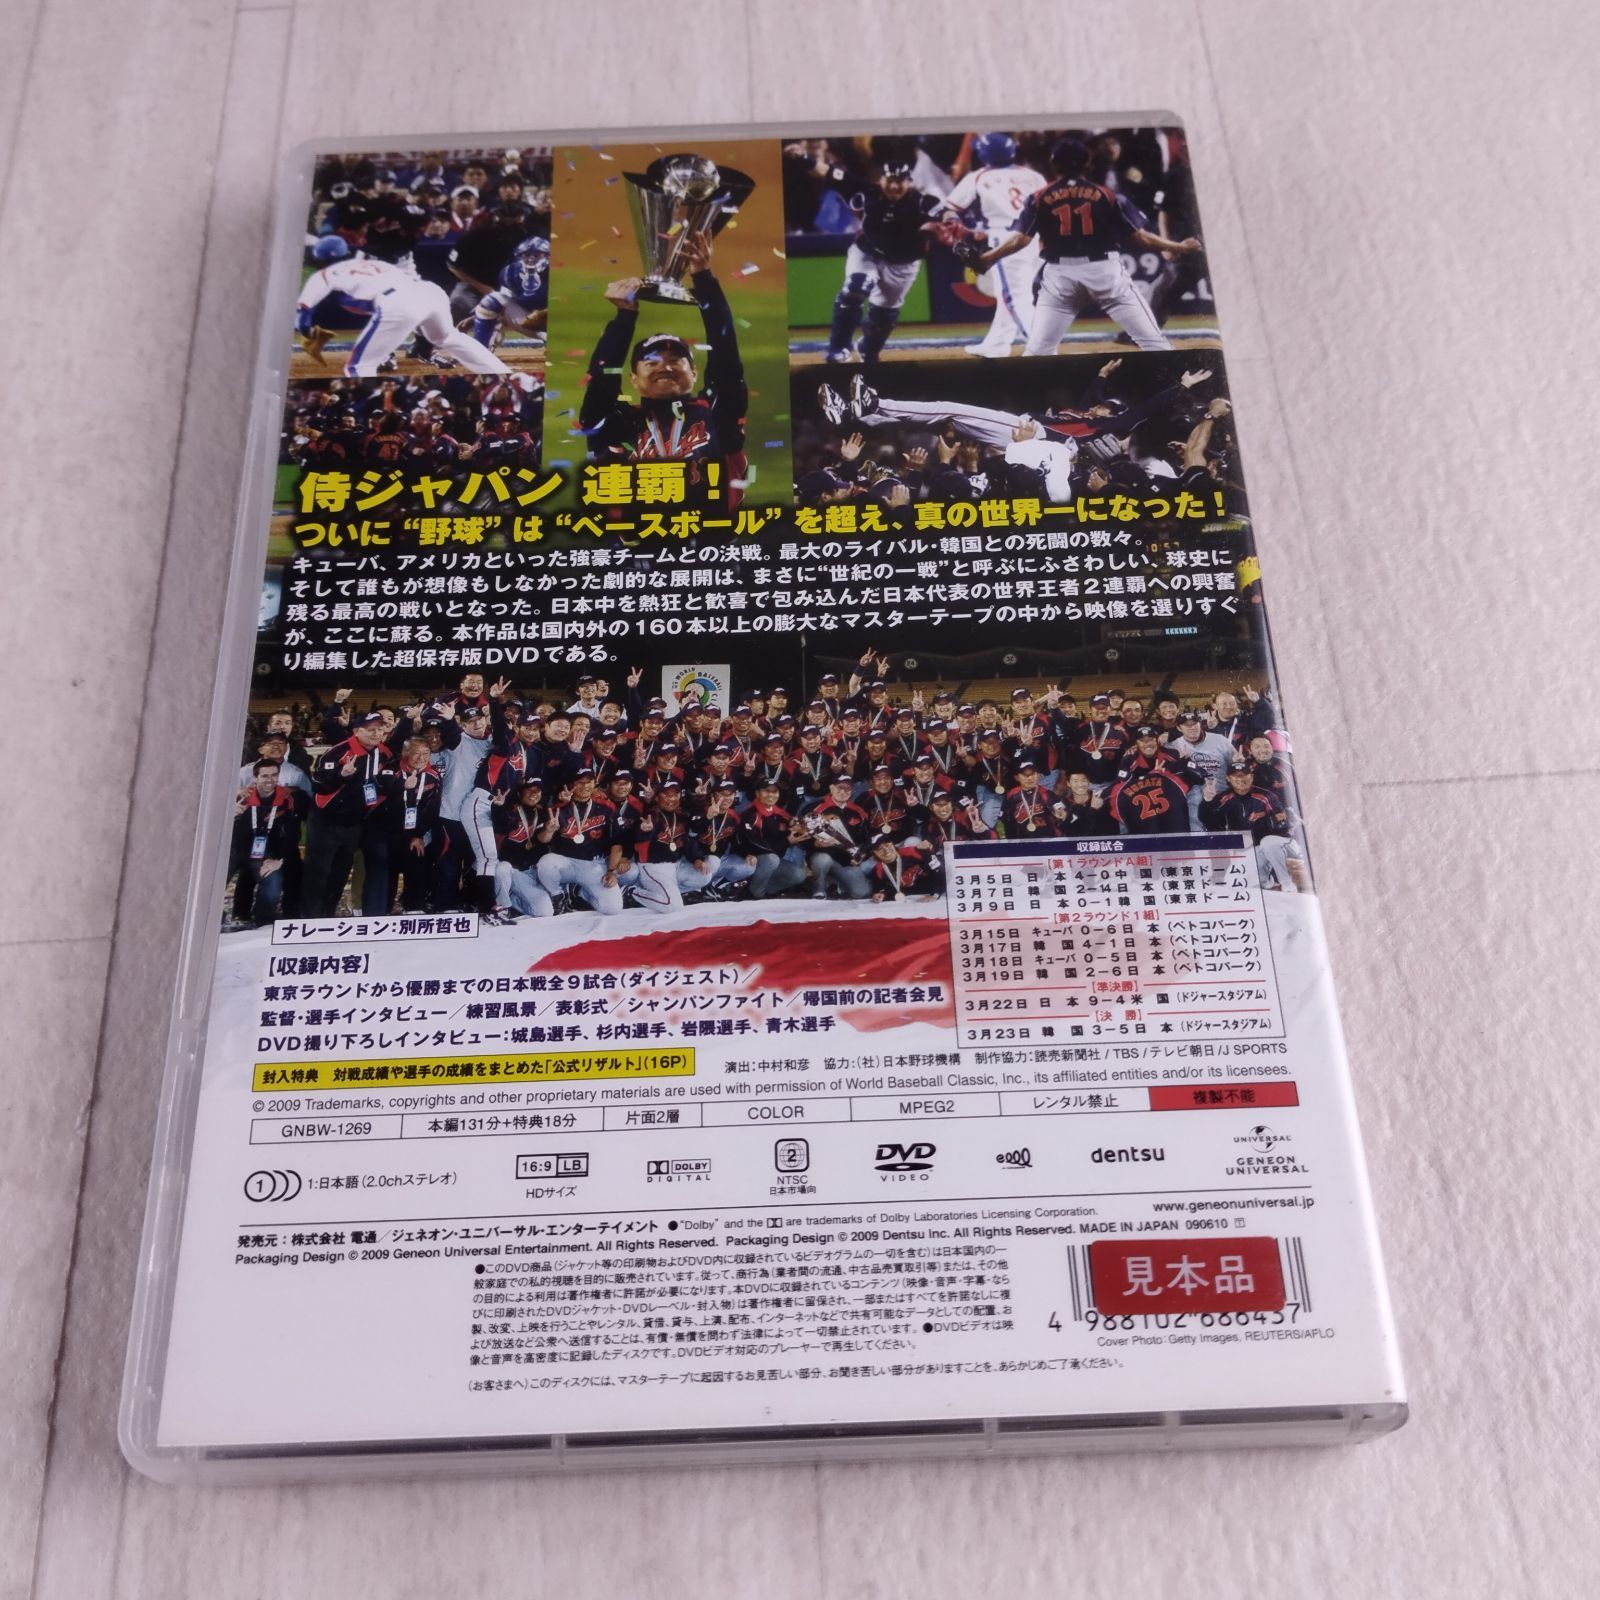 DVD 09 ワールドベースボールクラシック 日本代表V2への軌跡 - メルカリ